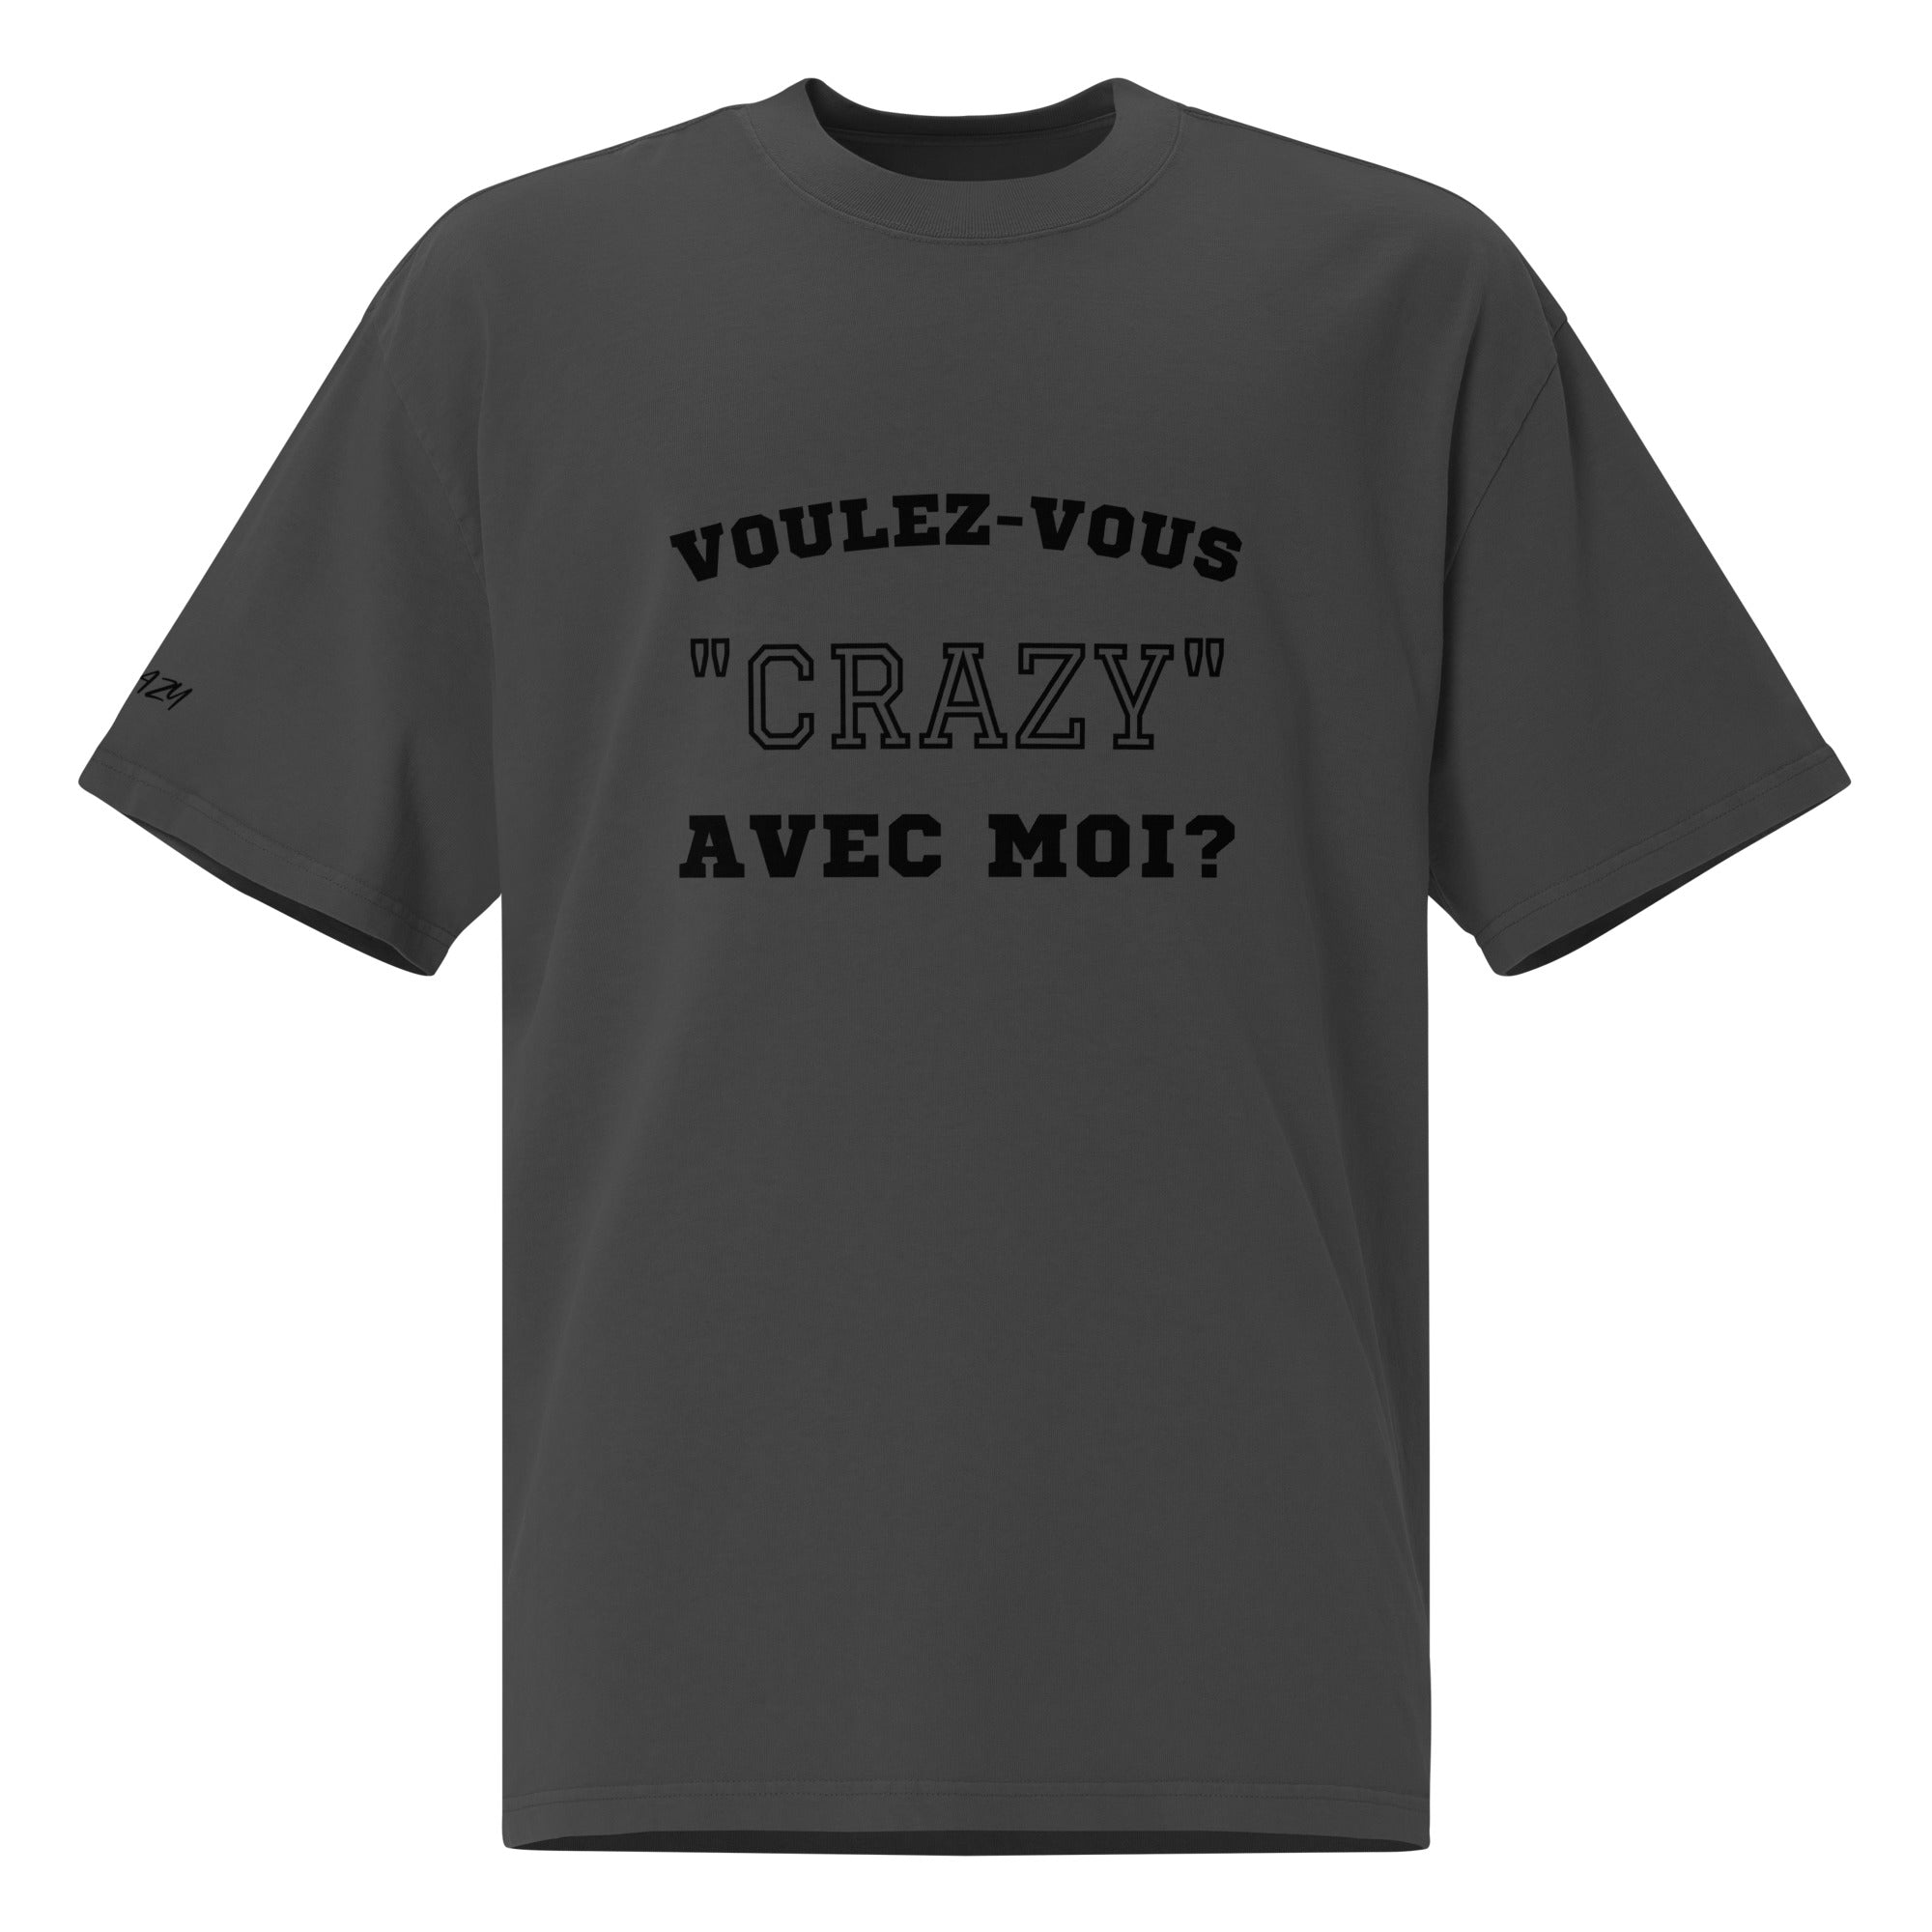 Vervaagd oversized t-shirt "Voulez-vous..."